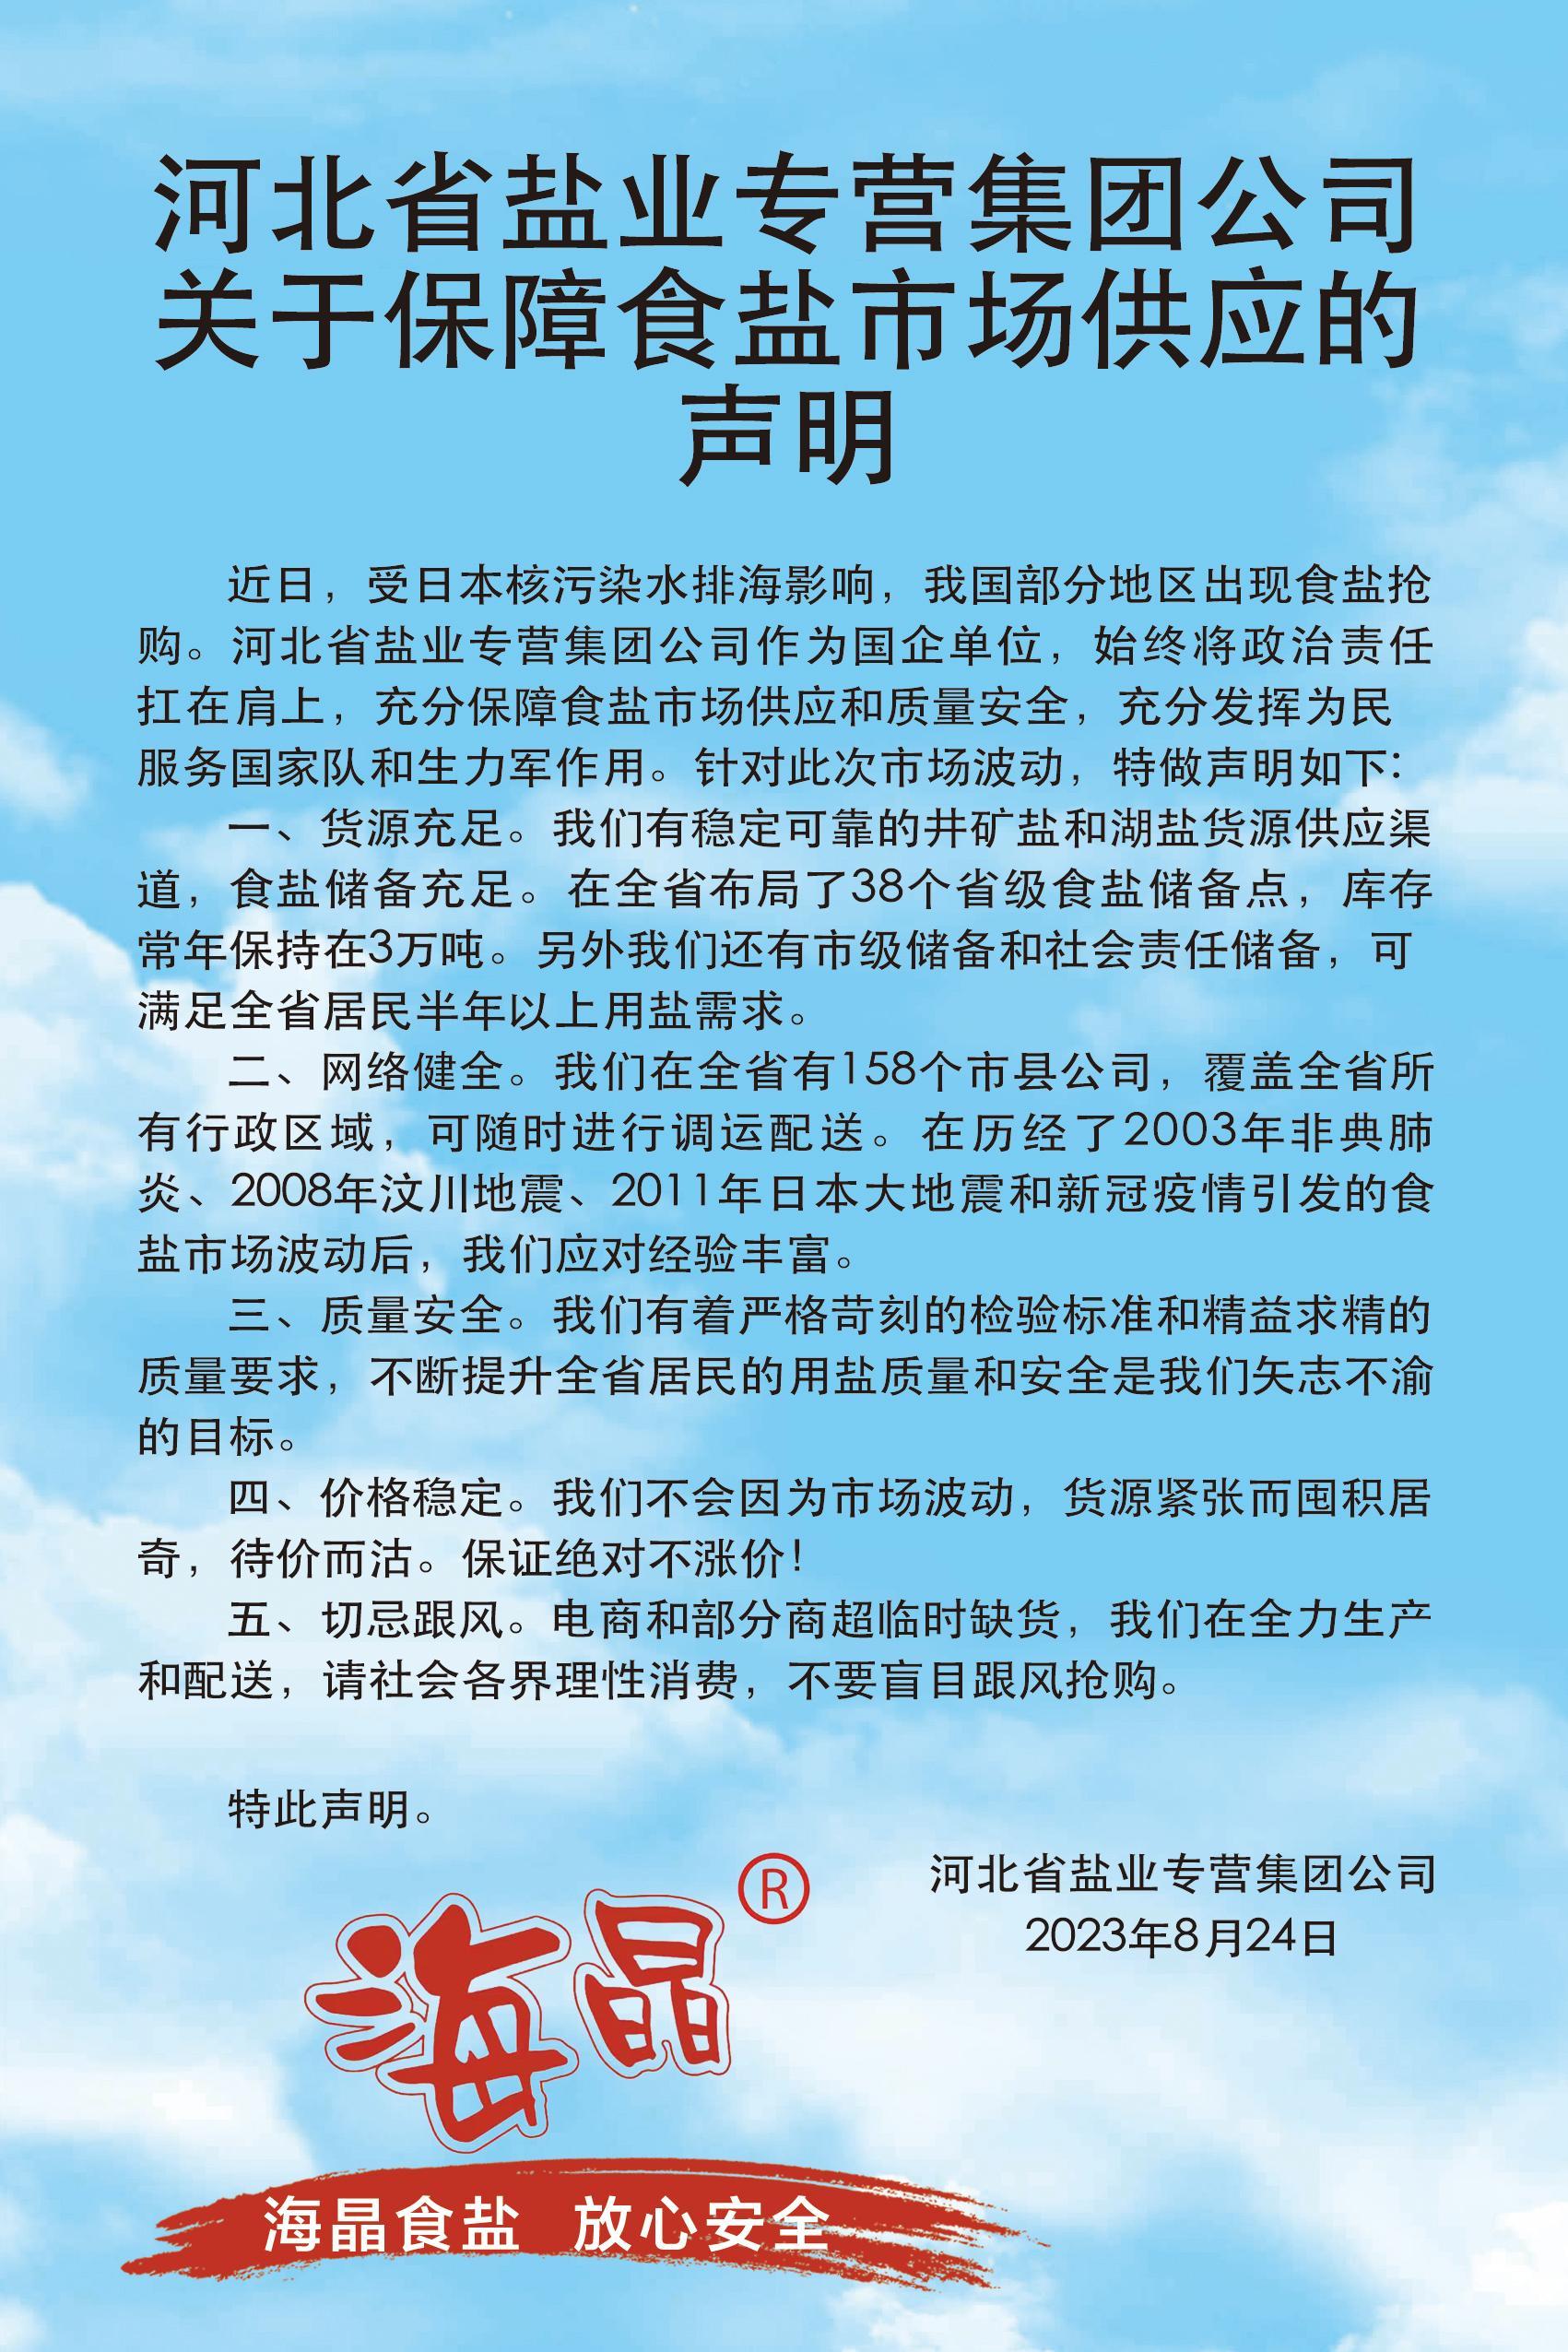 河北省盐业专营集团公司关于保障食盐市场供应的声明